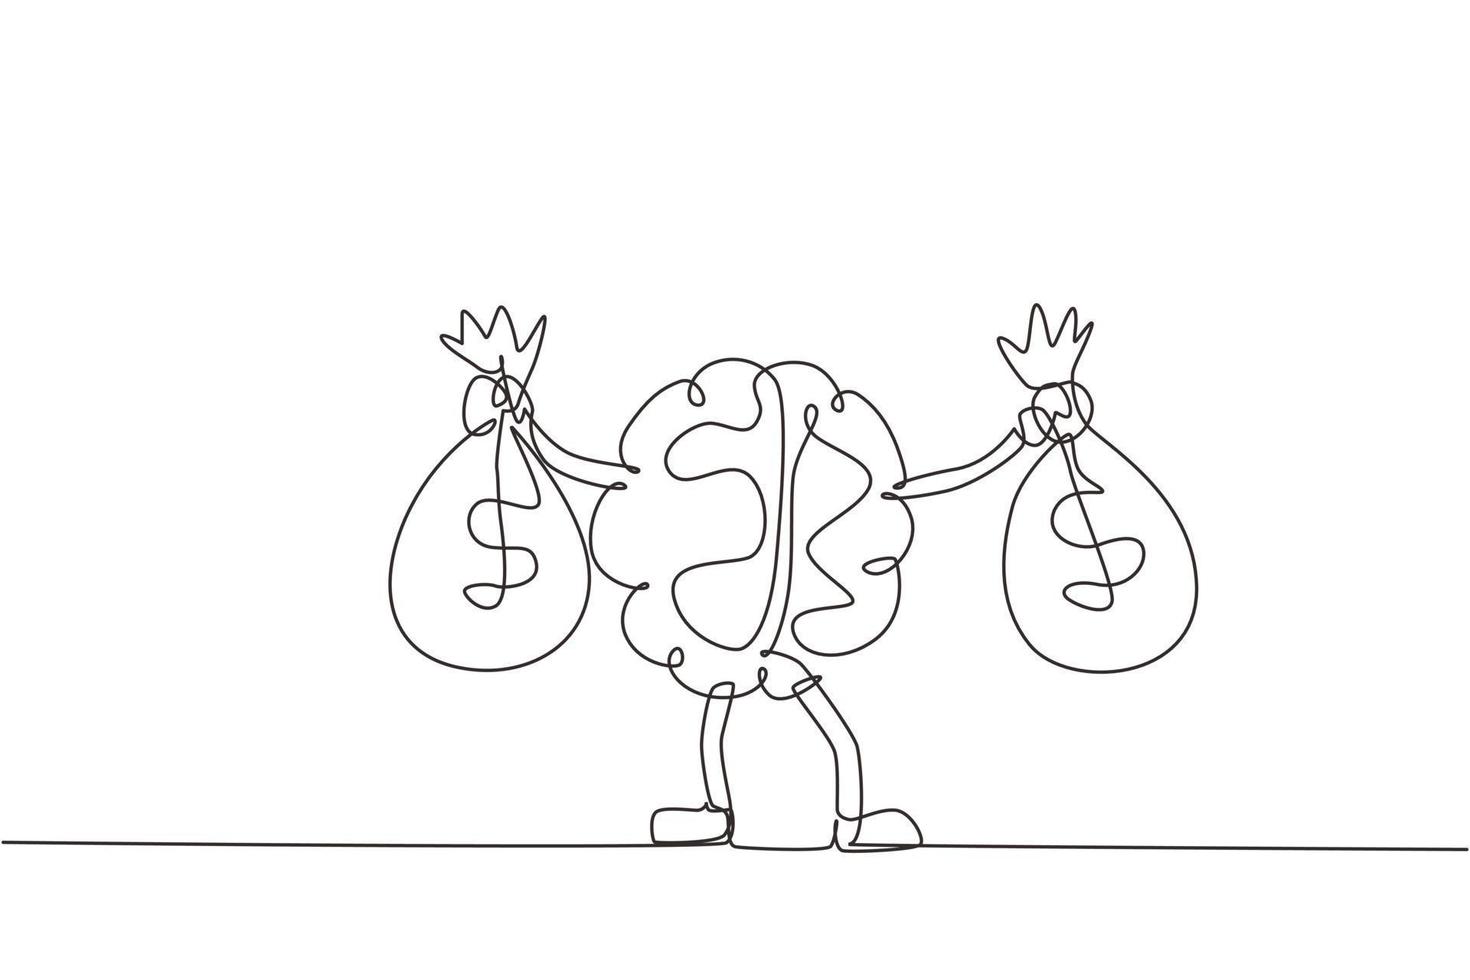 cervello di disegno a linea continua singola che tiene la borsa dei soldi con due mani. illustrazione del personaggio della mascotte del cervello carino che tiene la borsa piena di soldi. illustrazione vettoriale di disegno grafico dinamico di una linea